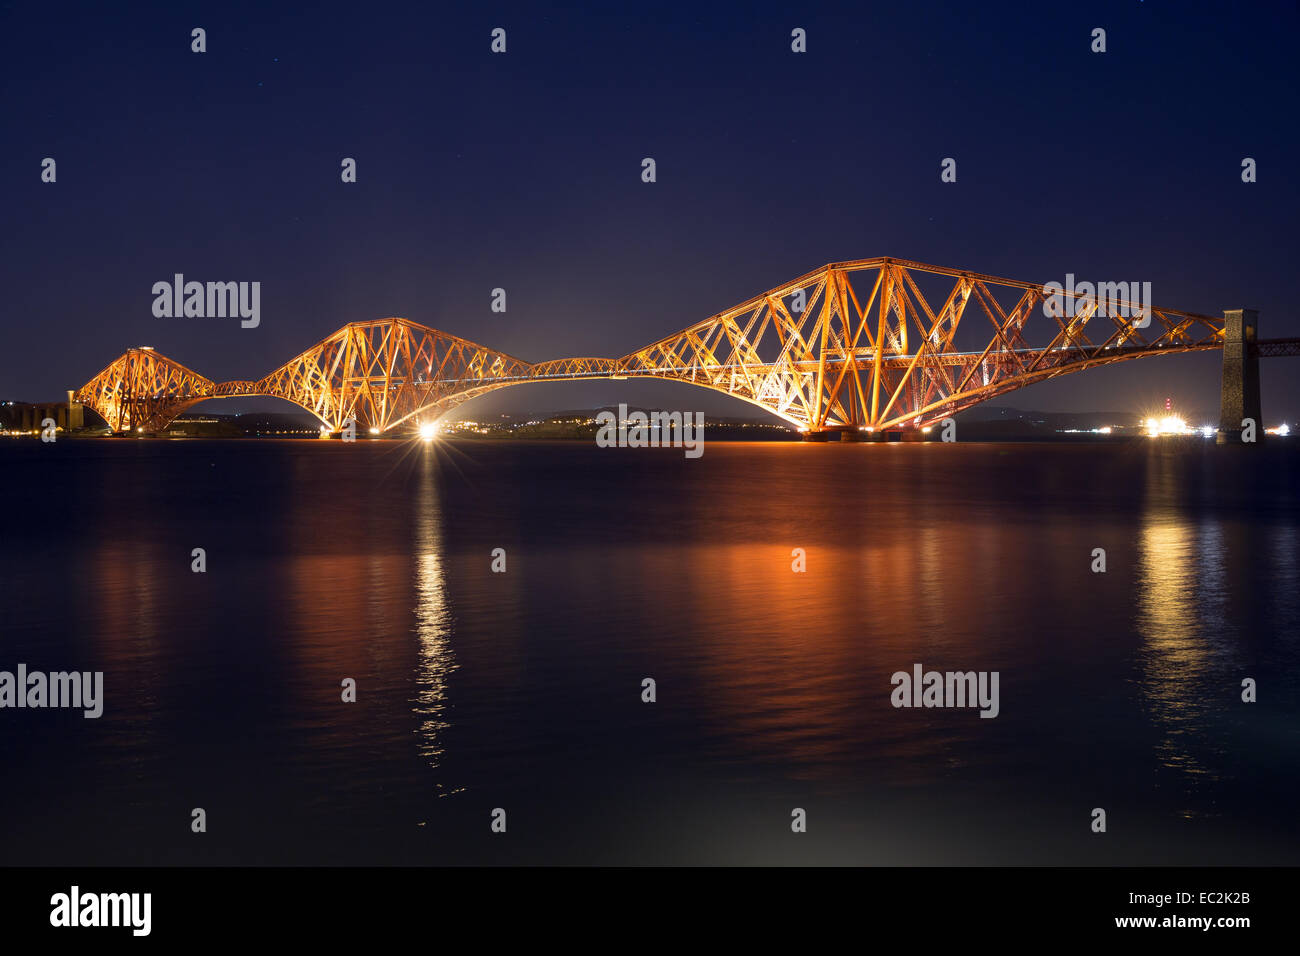 Edinburgh Scotland UK. 8 décembre 2014. La vue de Forth Rail Bridge traversant le "Firth of Forth", l'estuaire de la rivière près de la capitale, Édimbourg. Le pont peint rouge, achevée en 1890 est de 2,5 km de longueur et environ 200 trains par jour. Crédit : Ian Wray/Alamy Live News Banque D'Images